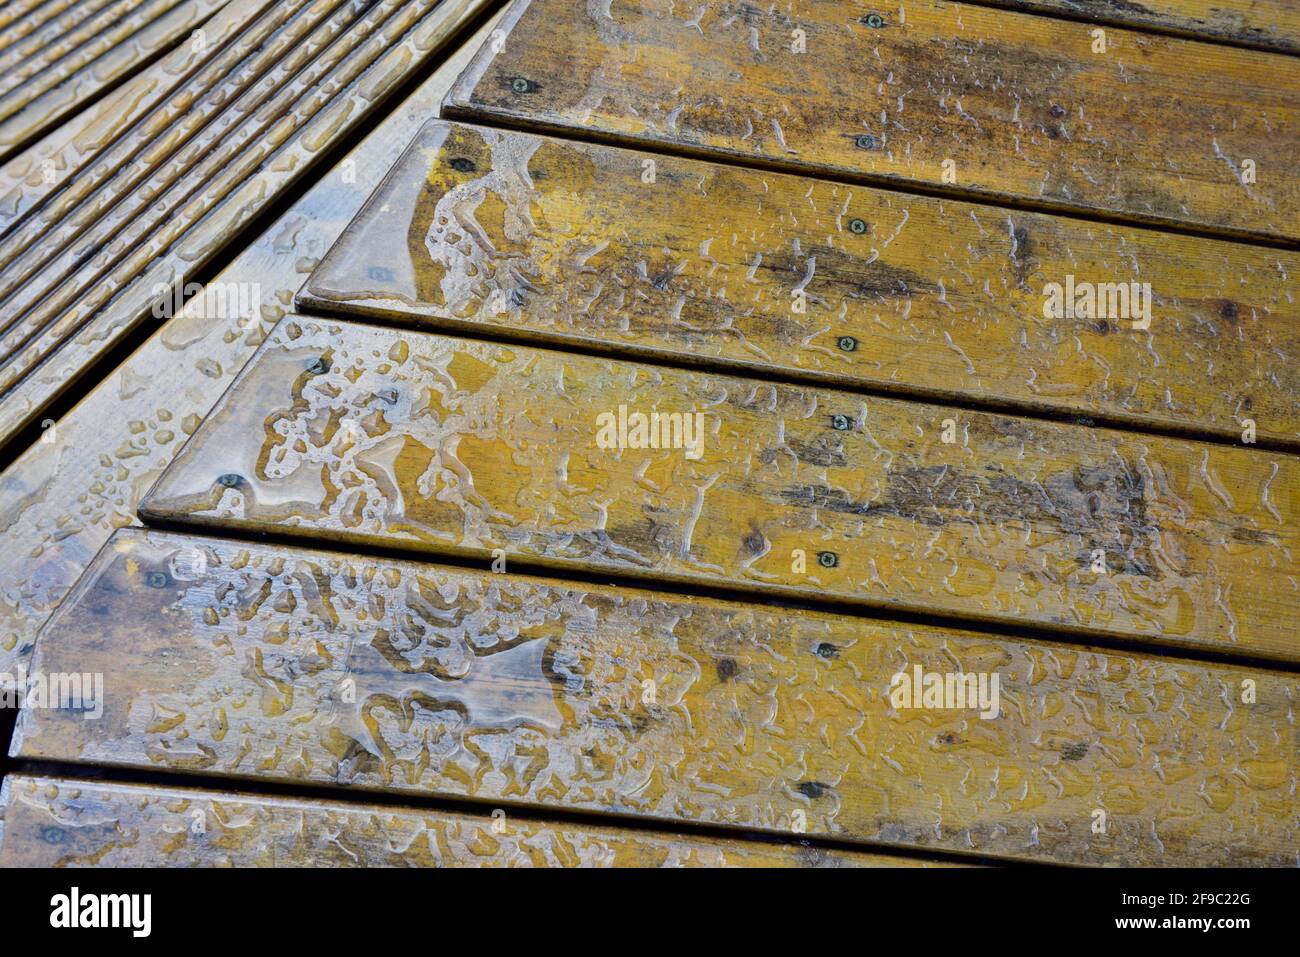 Perce de l'eau sur des lames de terrasse en bois huilé. Dessus avec le dessus plat descendant jusqu'au pas avec les rainures Banque D'Images